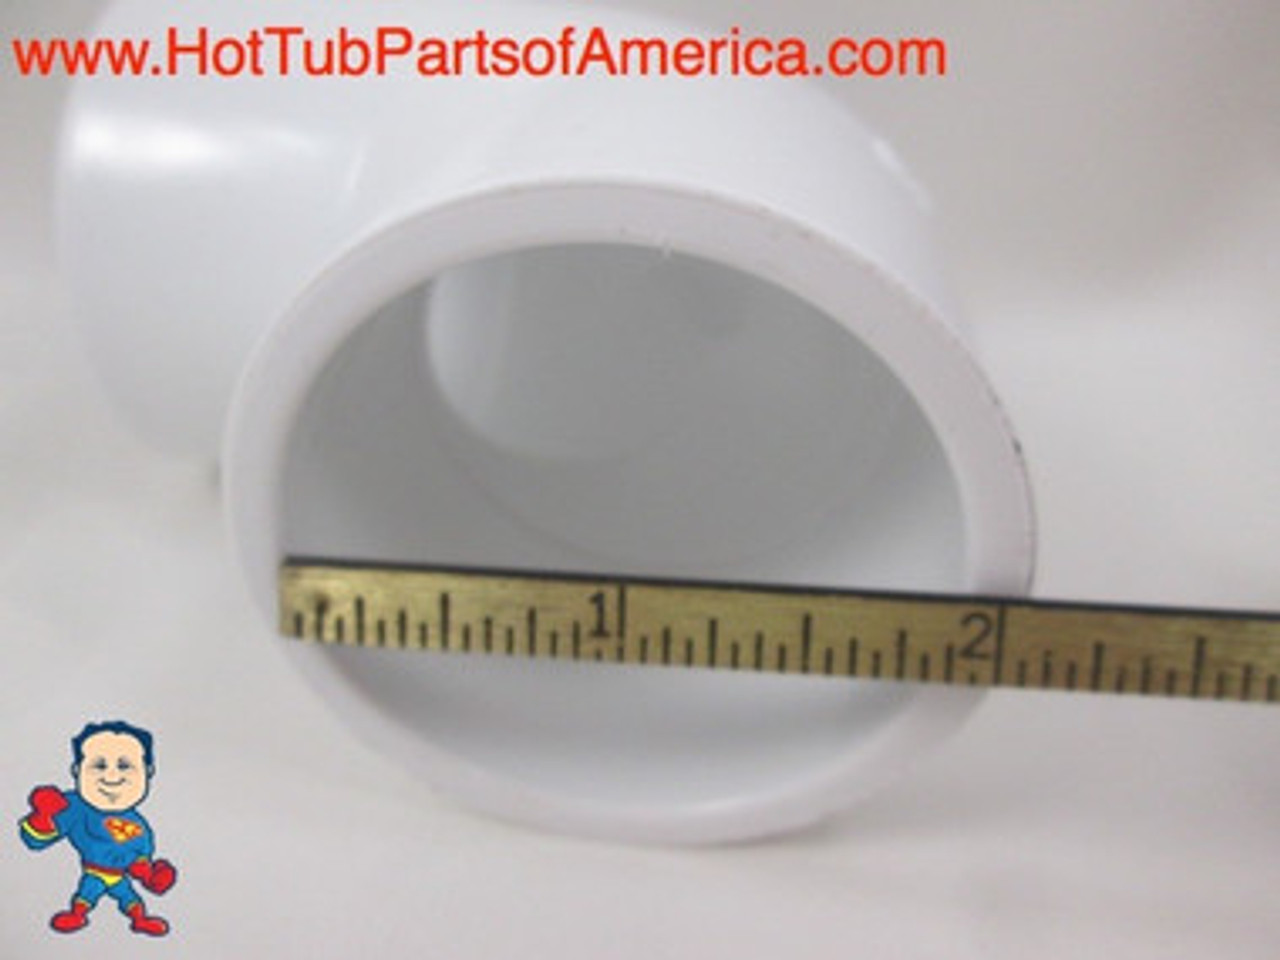 10X Hot Tub Spa 90 ELL 1 1/2" Slip X 1 1/2" Slip Plumbing PVC Fitting How To Video